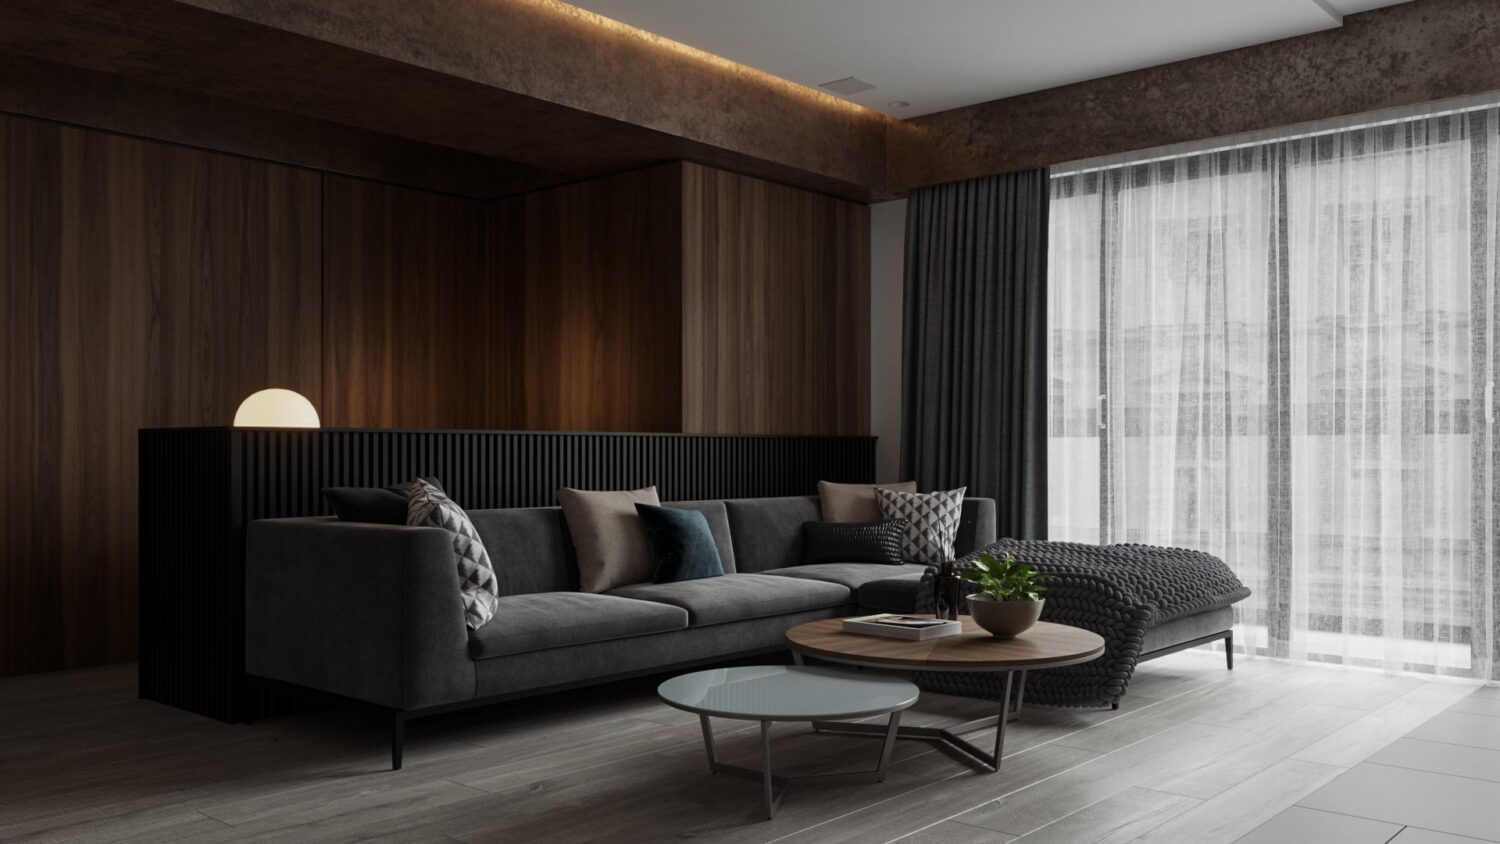 دانلود مدل سه بعدی اتاق نشیمن 3D Living Room Interior Model